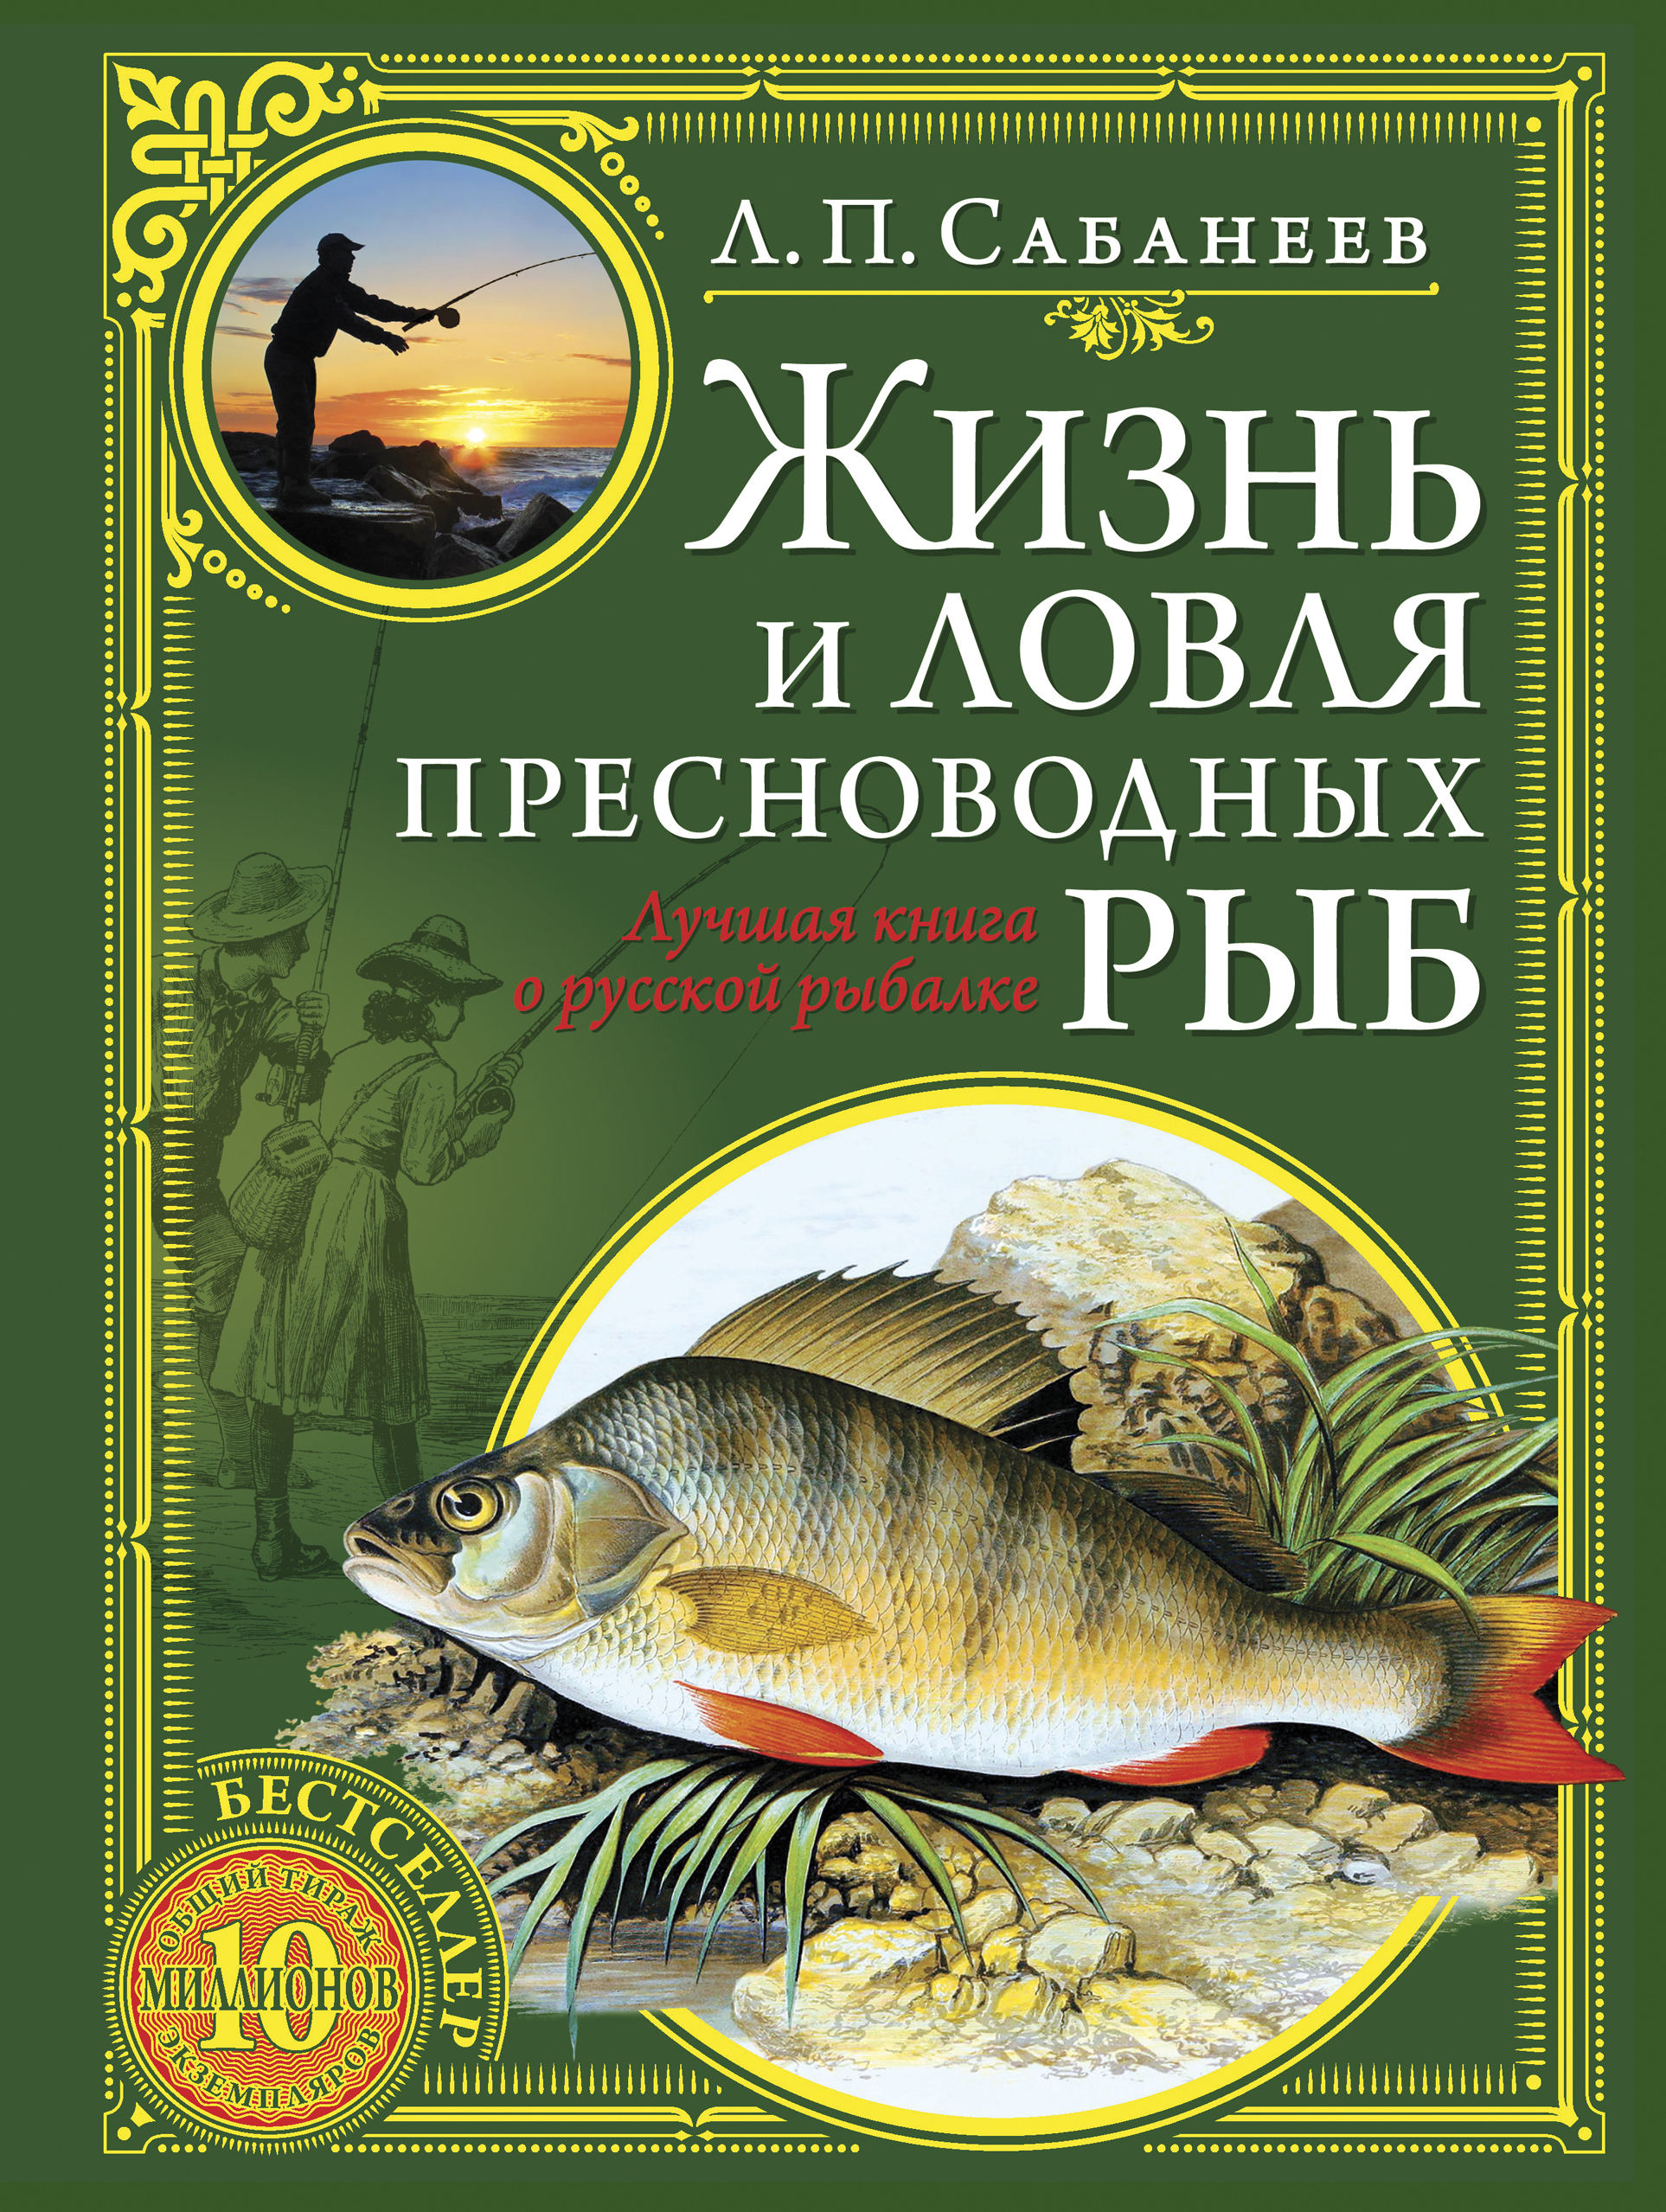 Рыба книги купить. Сабанеев жизнь и ловля пресноводных рыб книга.